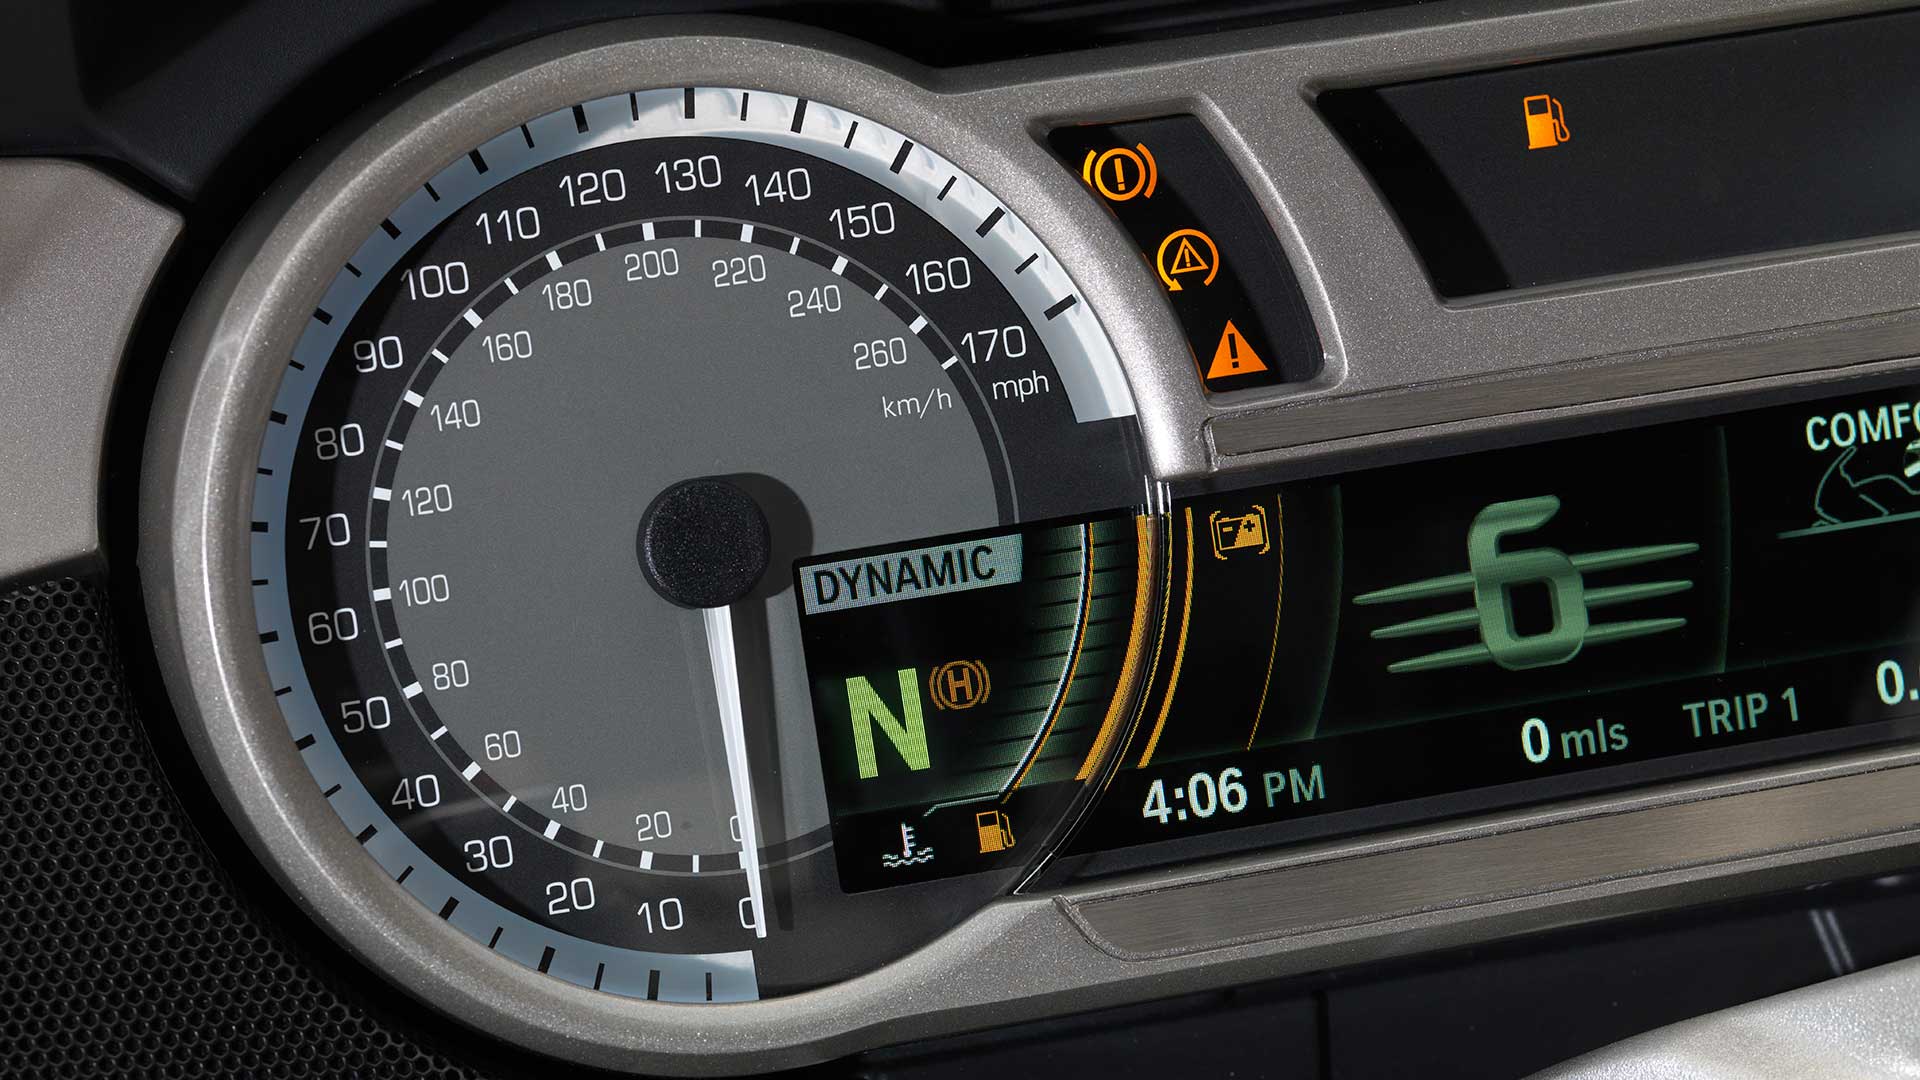 2014 BMW K 1600 GTL Exclusive speedometer